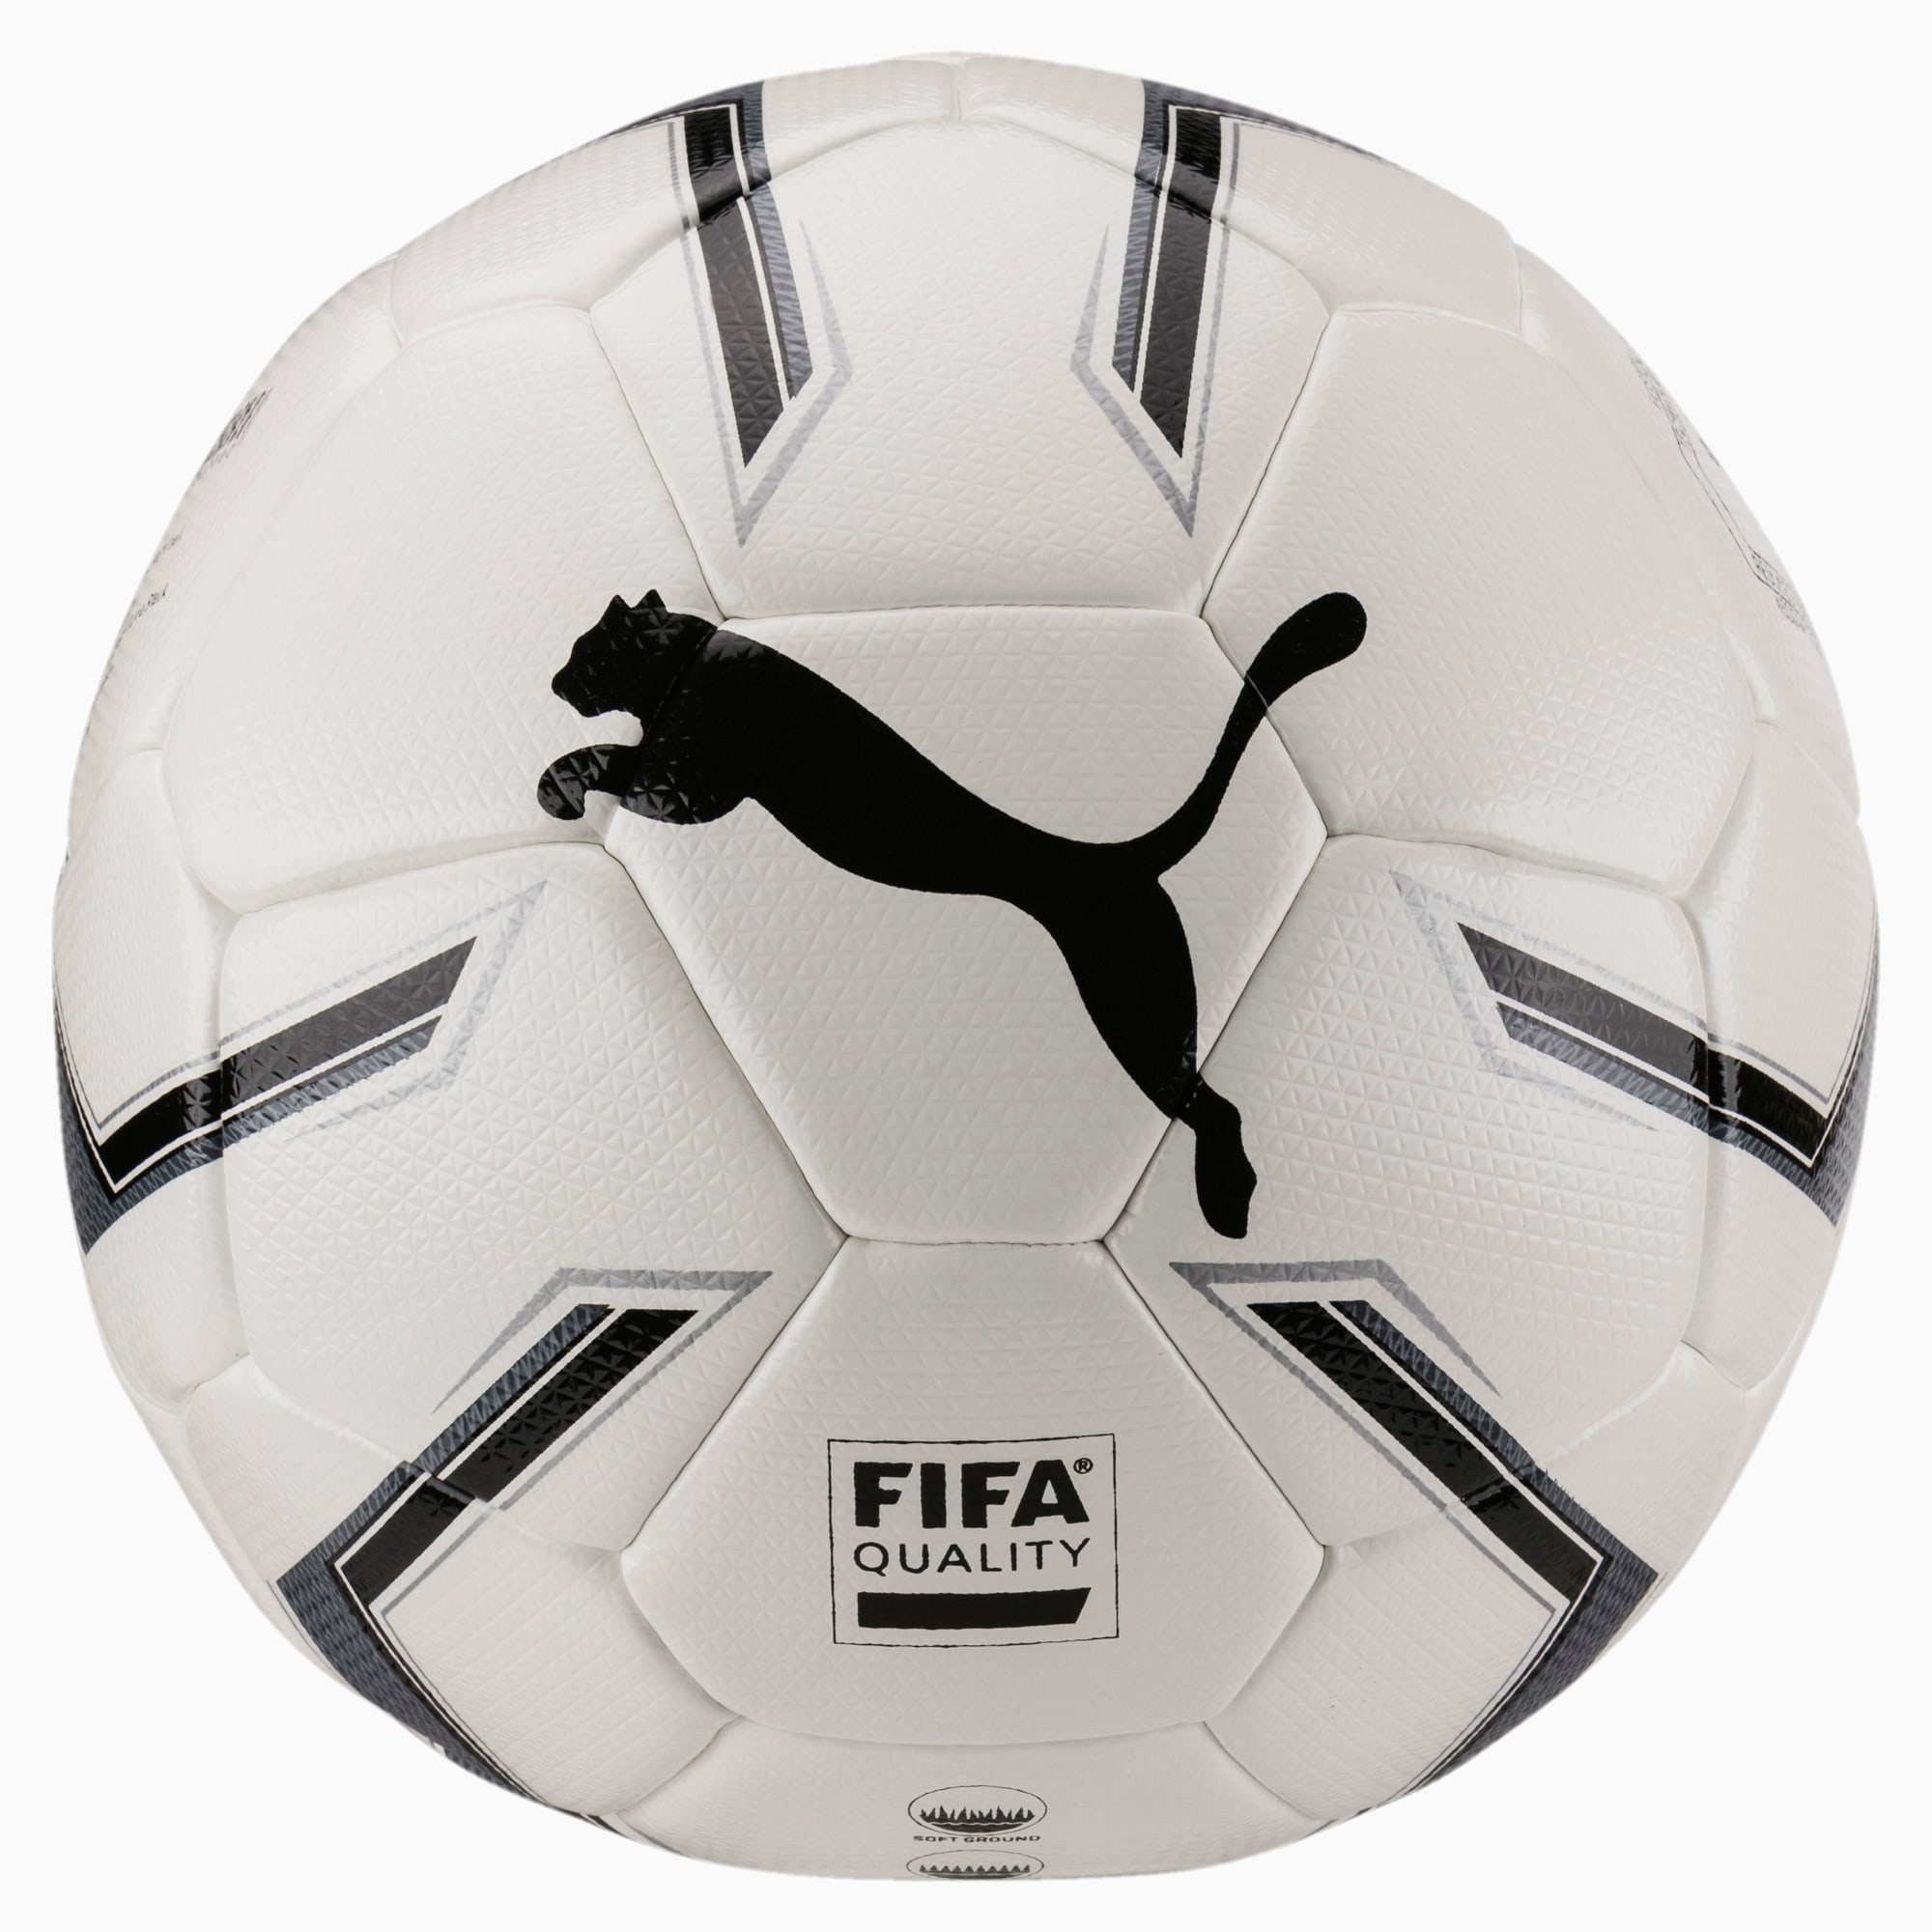 Puma公式 プーマエリート 2 2 ハイブリット サイズ4 Fifa Quality ボール J